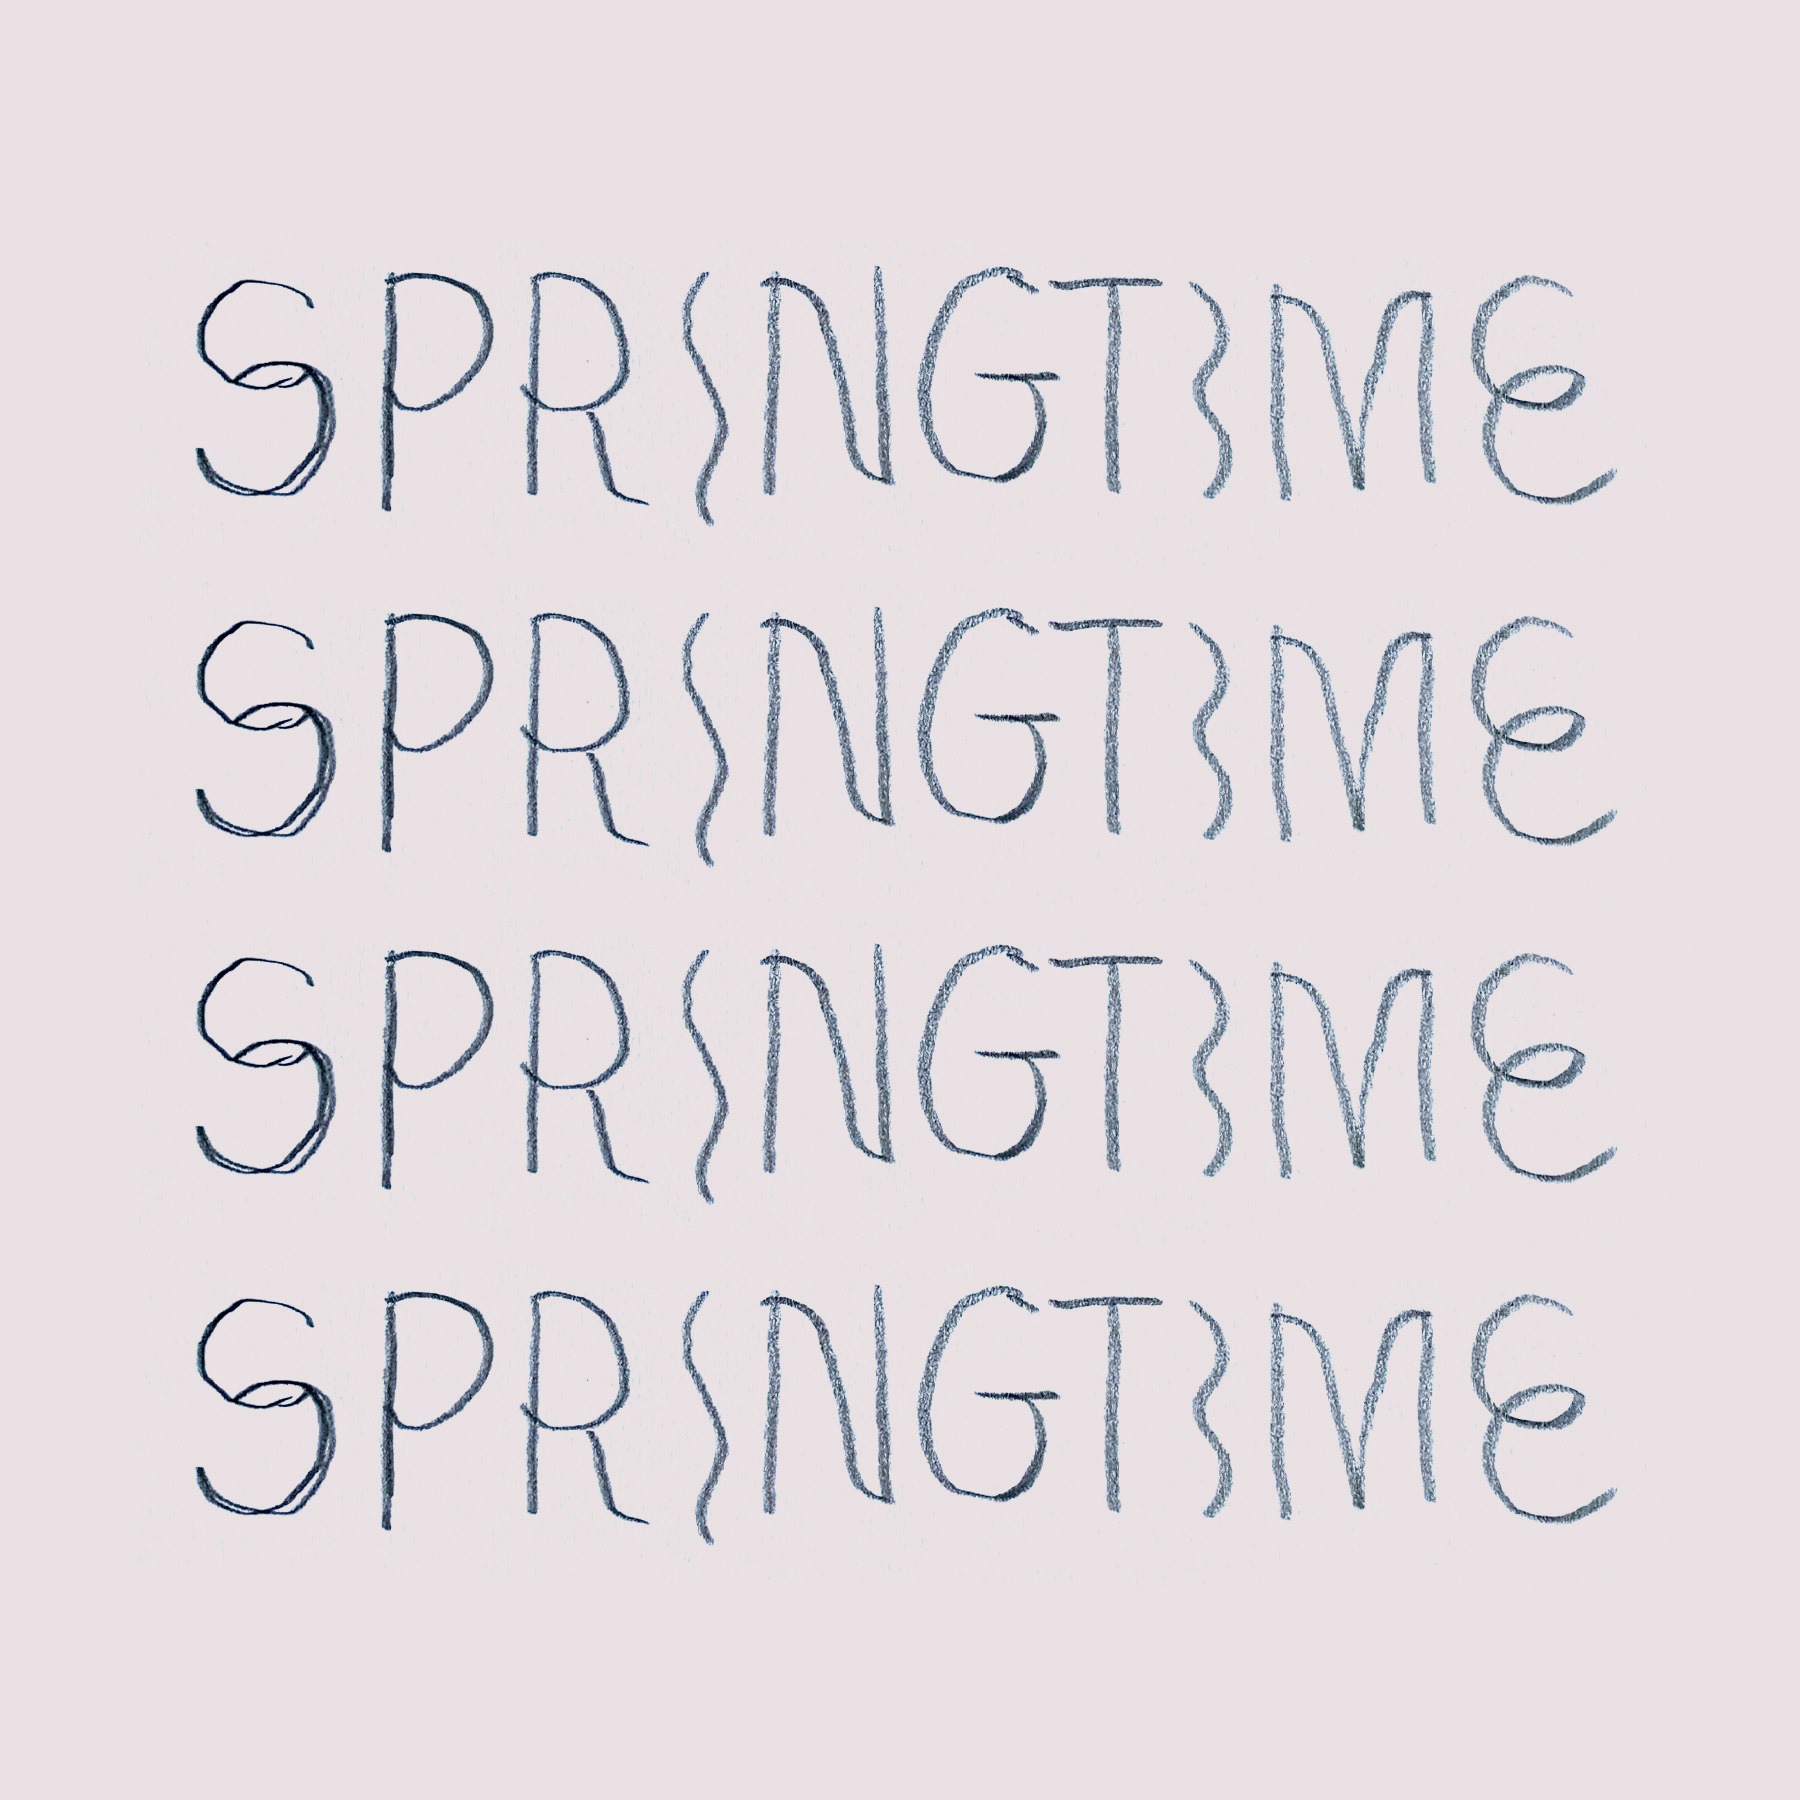 Springtime logo process sketches Springtime Graphic for Springtime Festival for SpringTime Festival Gold Coast 2-4 September 2022